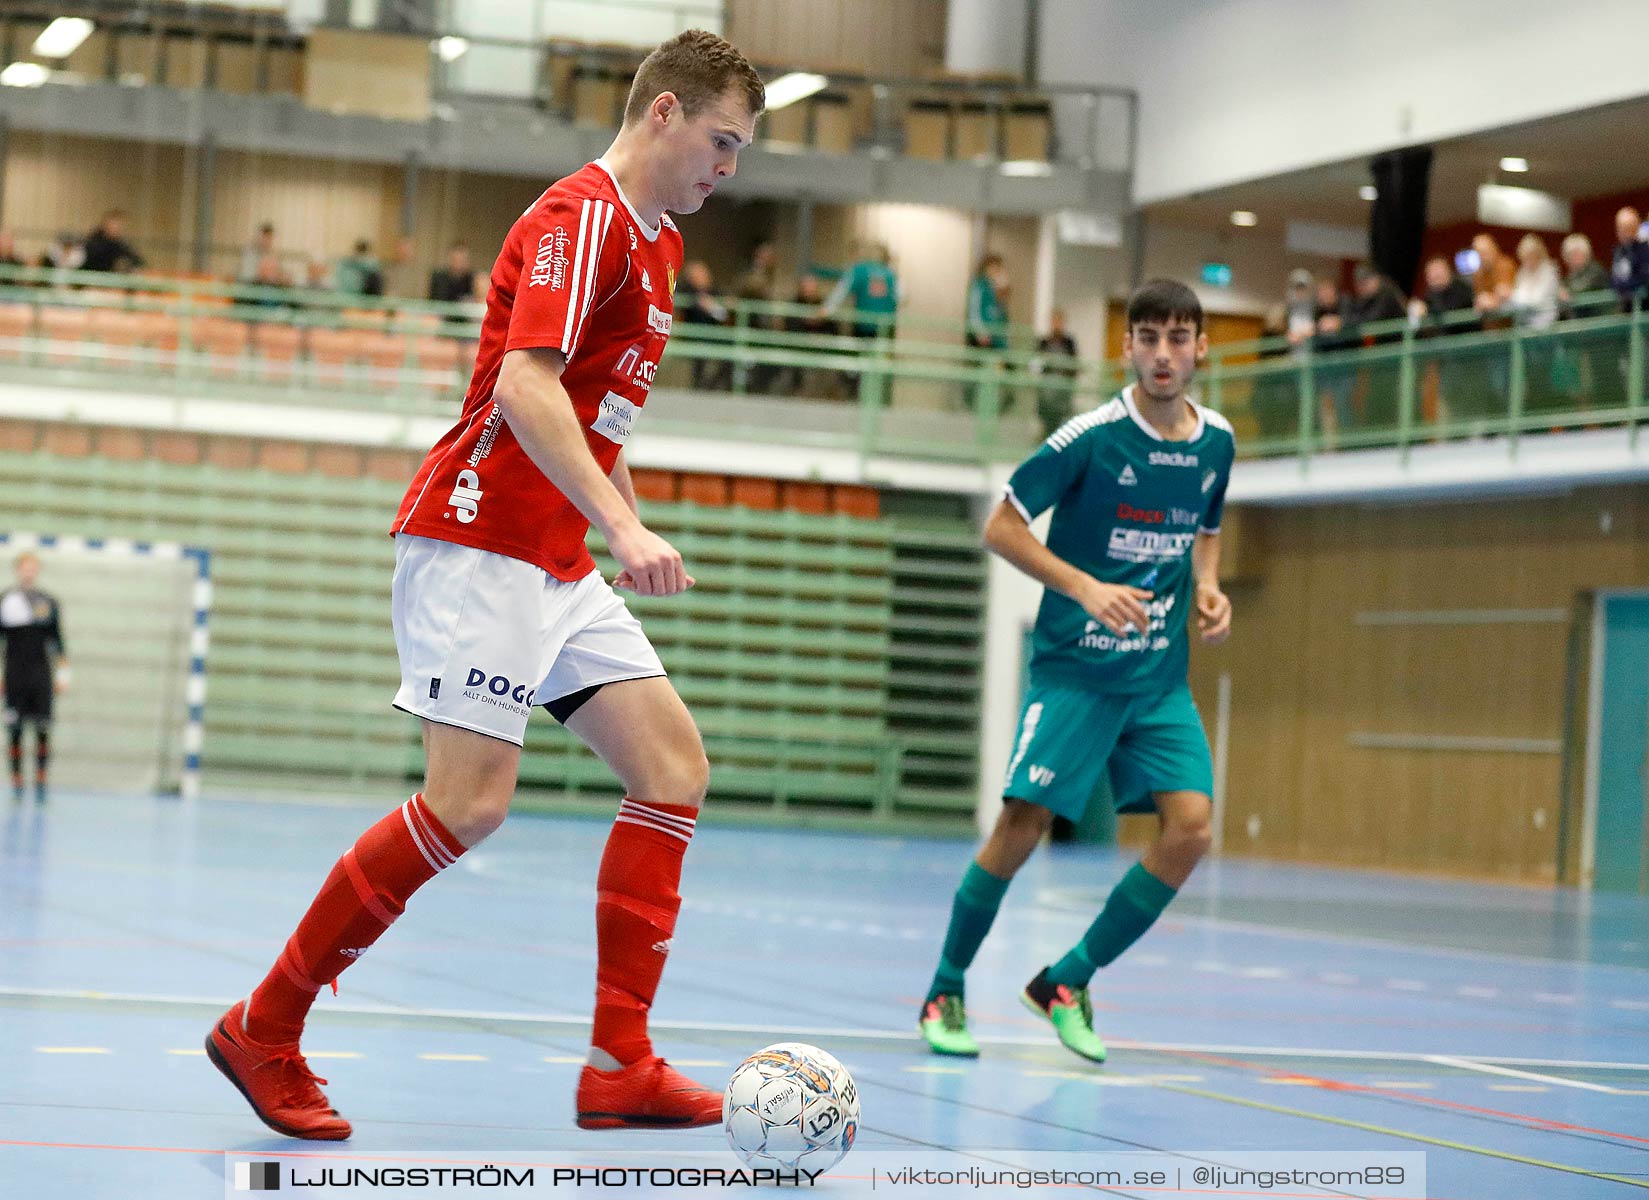 Skövde Futsalcup 2019 Herrar Vårgårda IK-Våmbs IF,herr,Arena Skövde,Skövde,Sverige,Futsal,,2019,227275